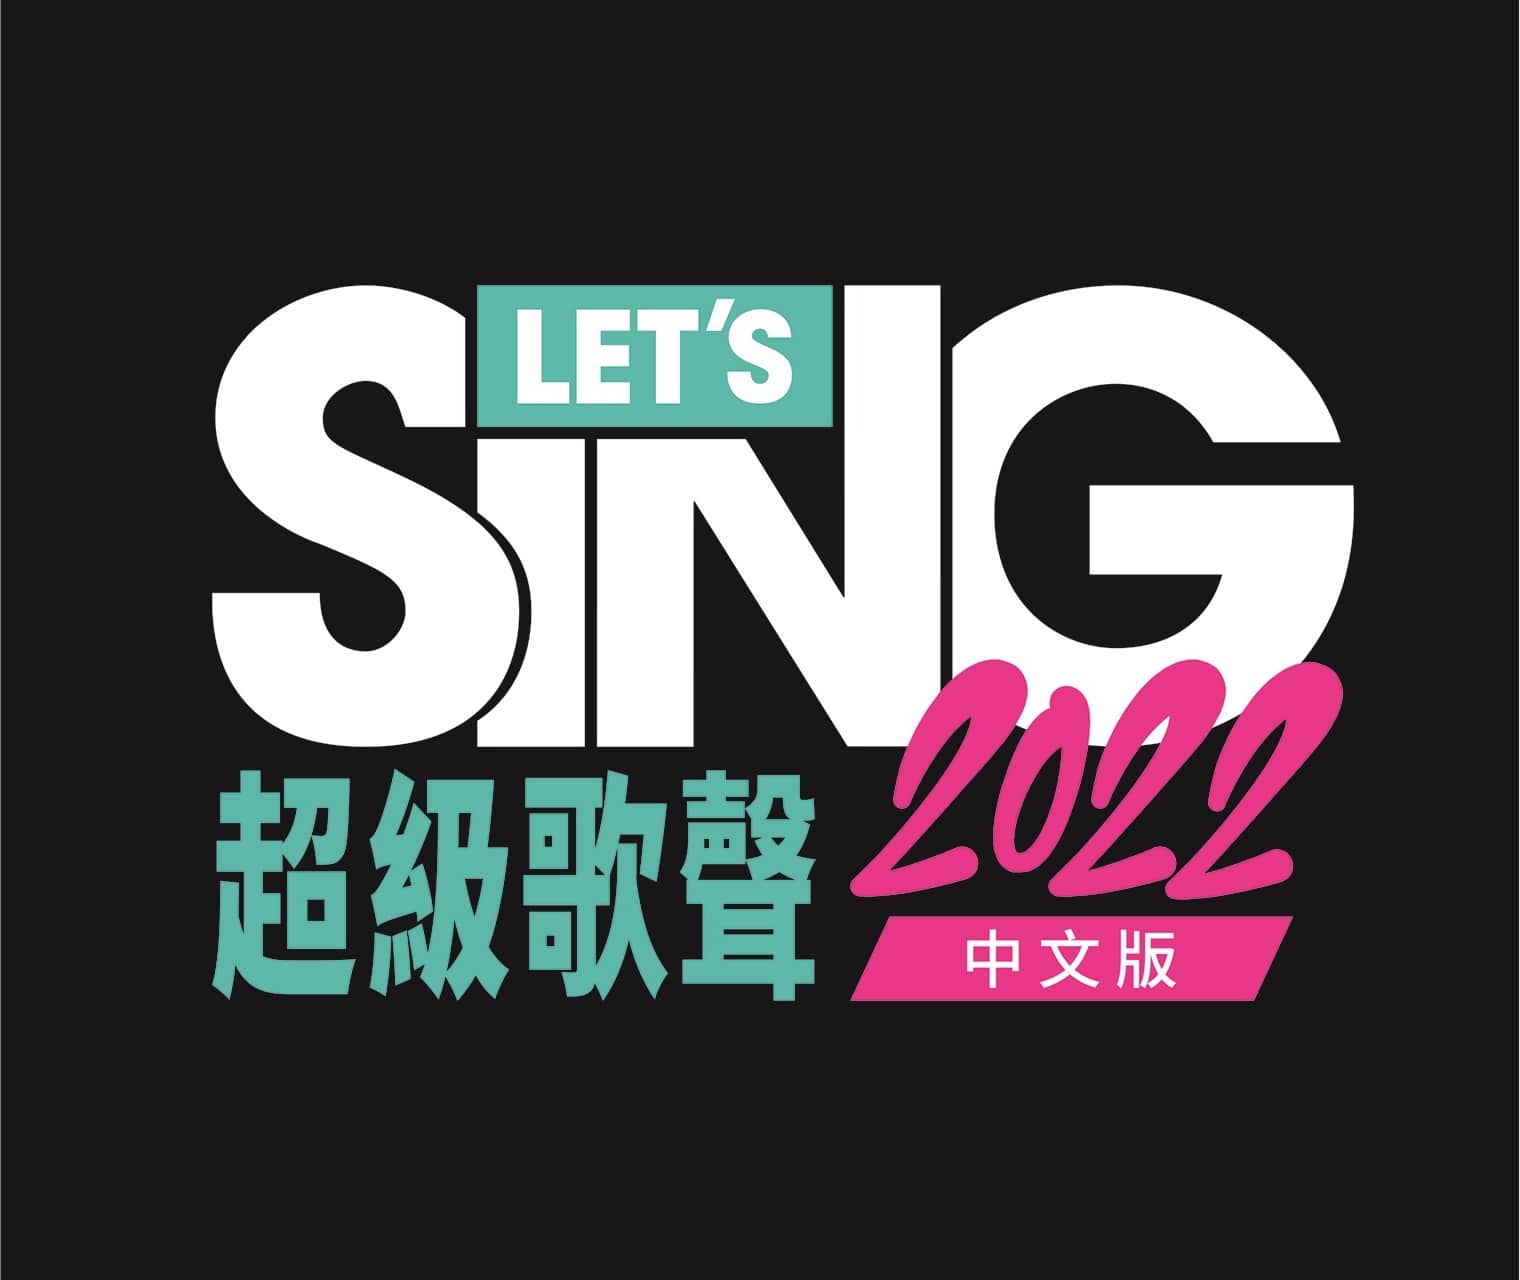 LETS-SING-2022-ASIA-LOGO